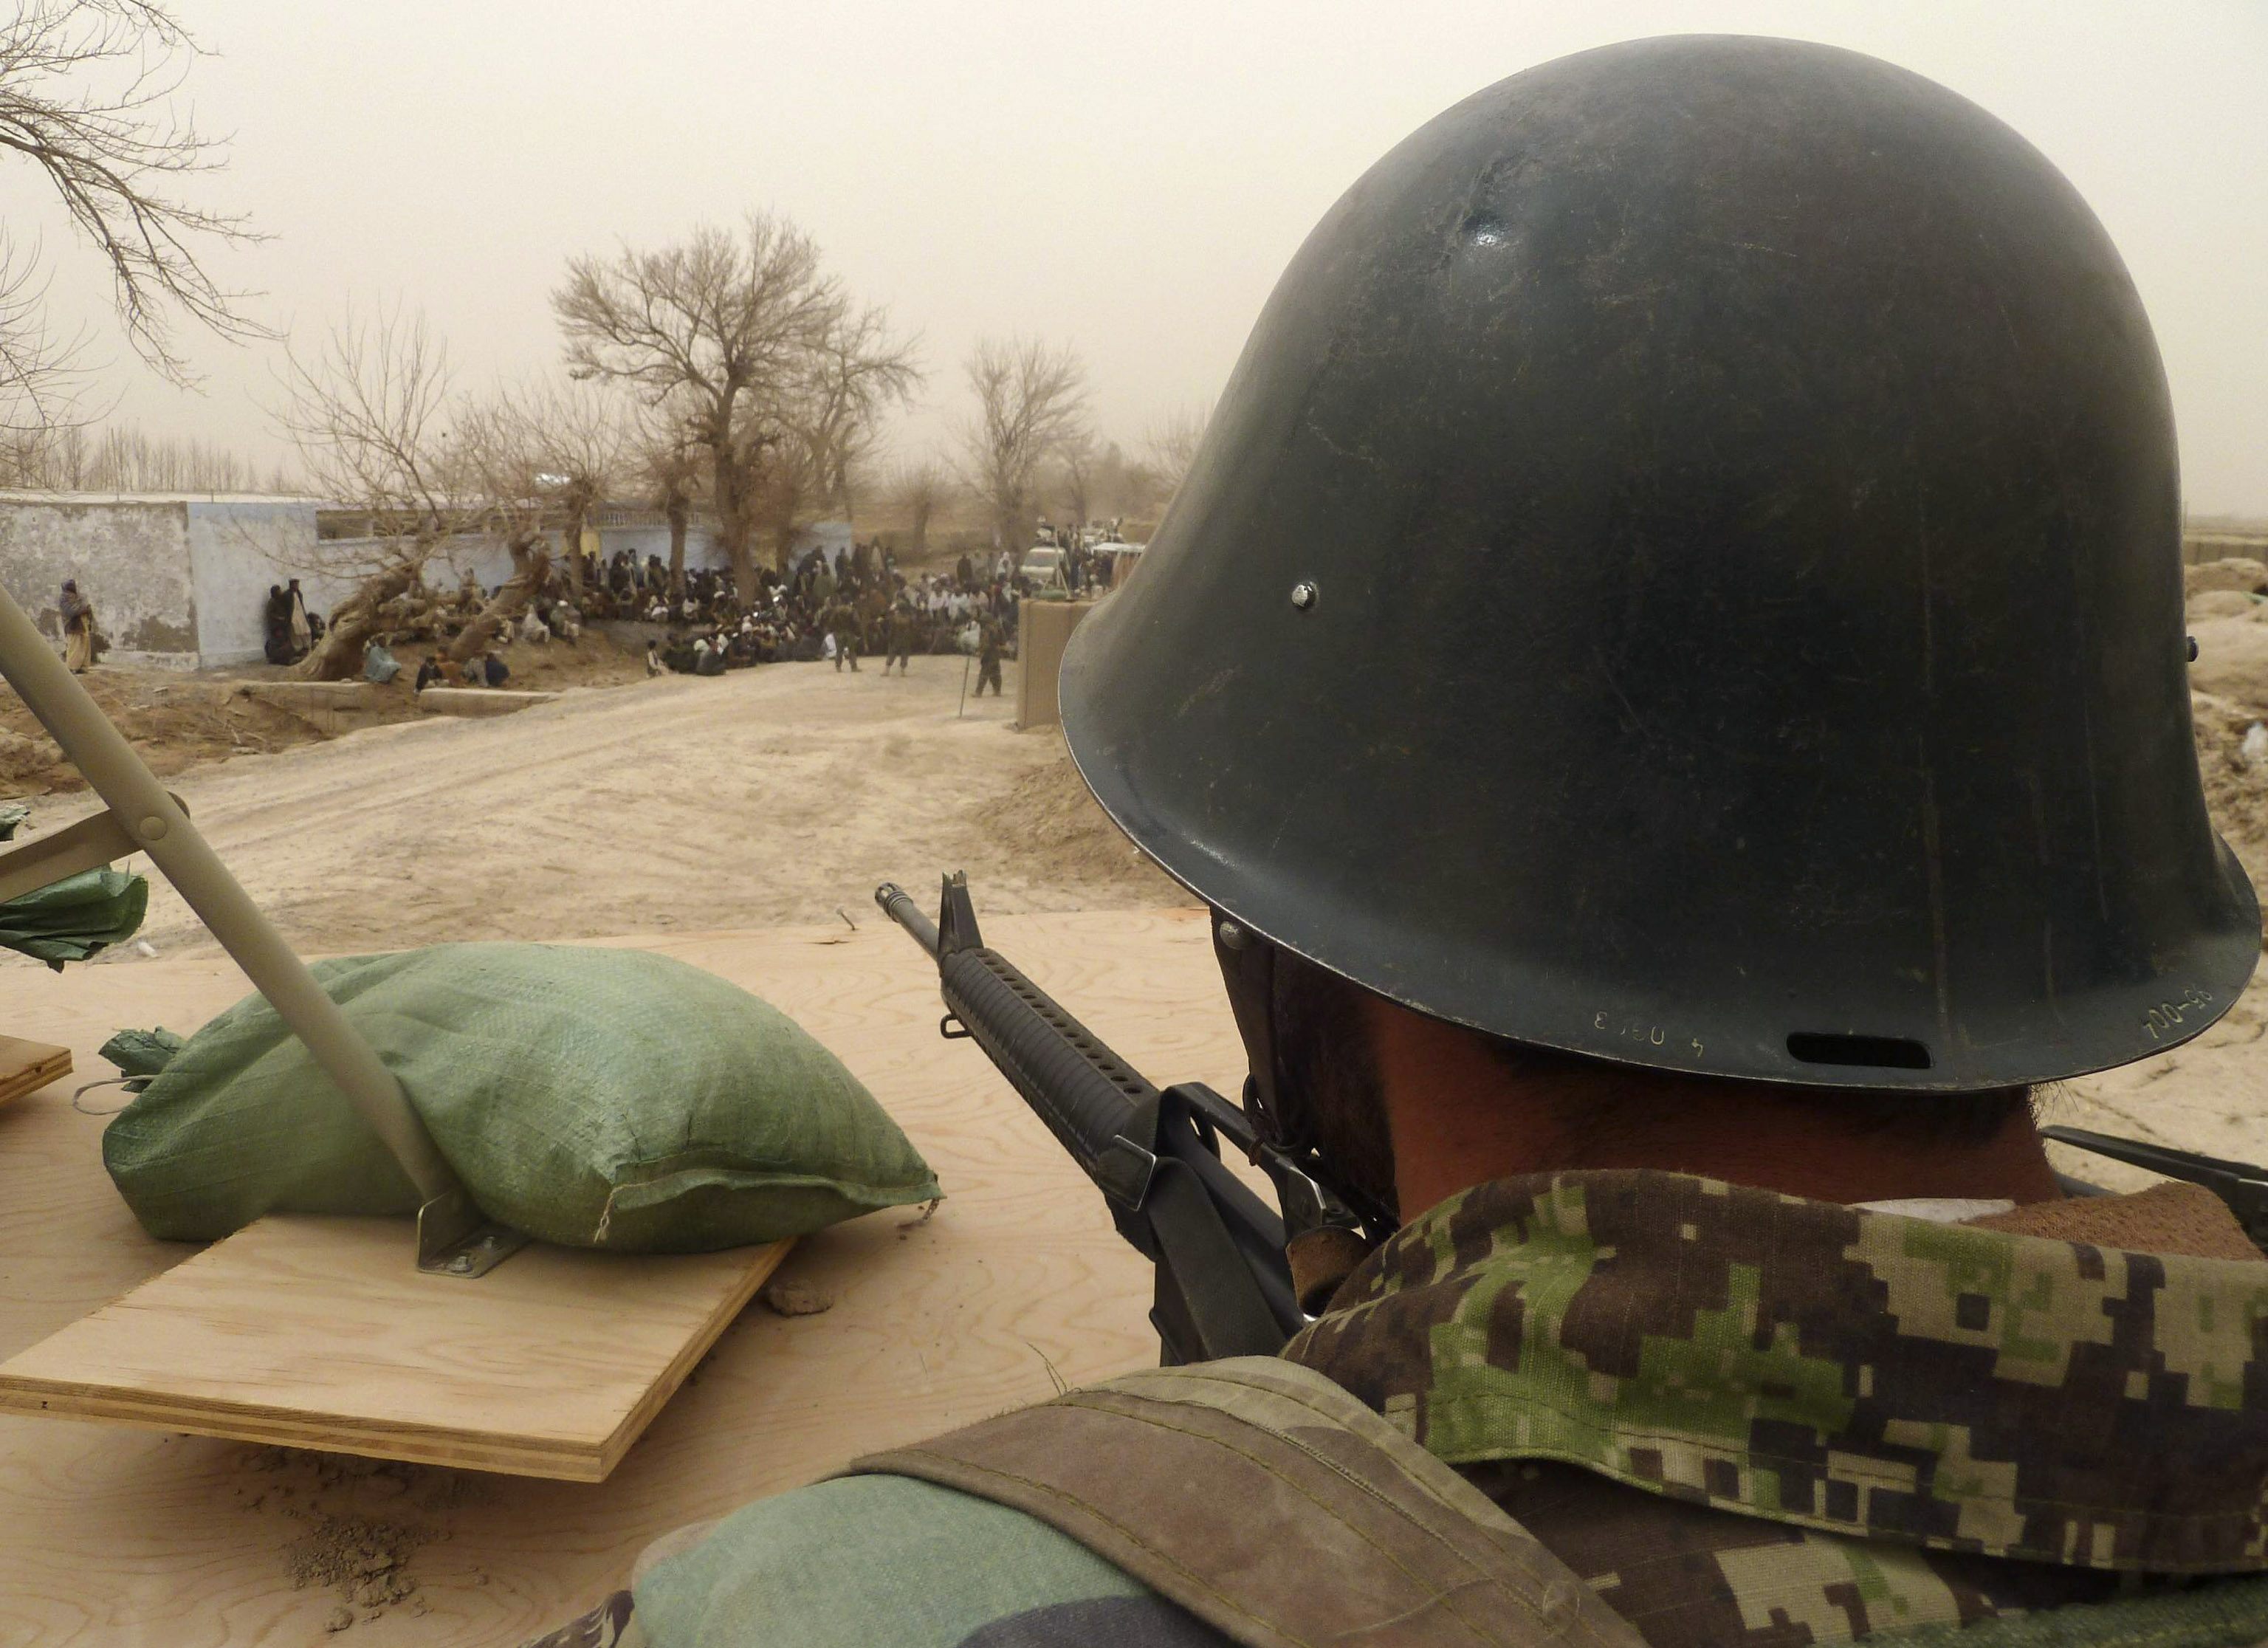 Σε κατάσταση σοκ ο στρατιώτης που σκότωσε 16 στο Αφγανιστάν